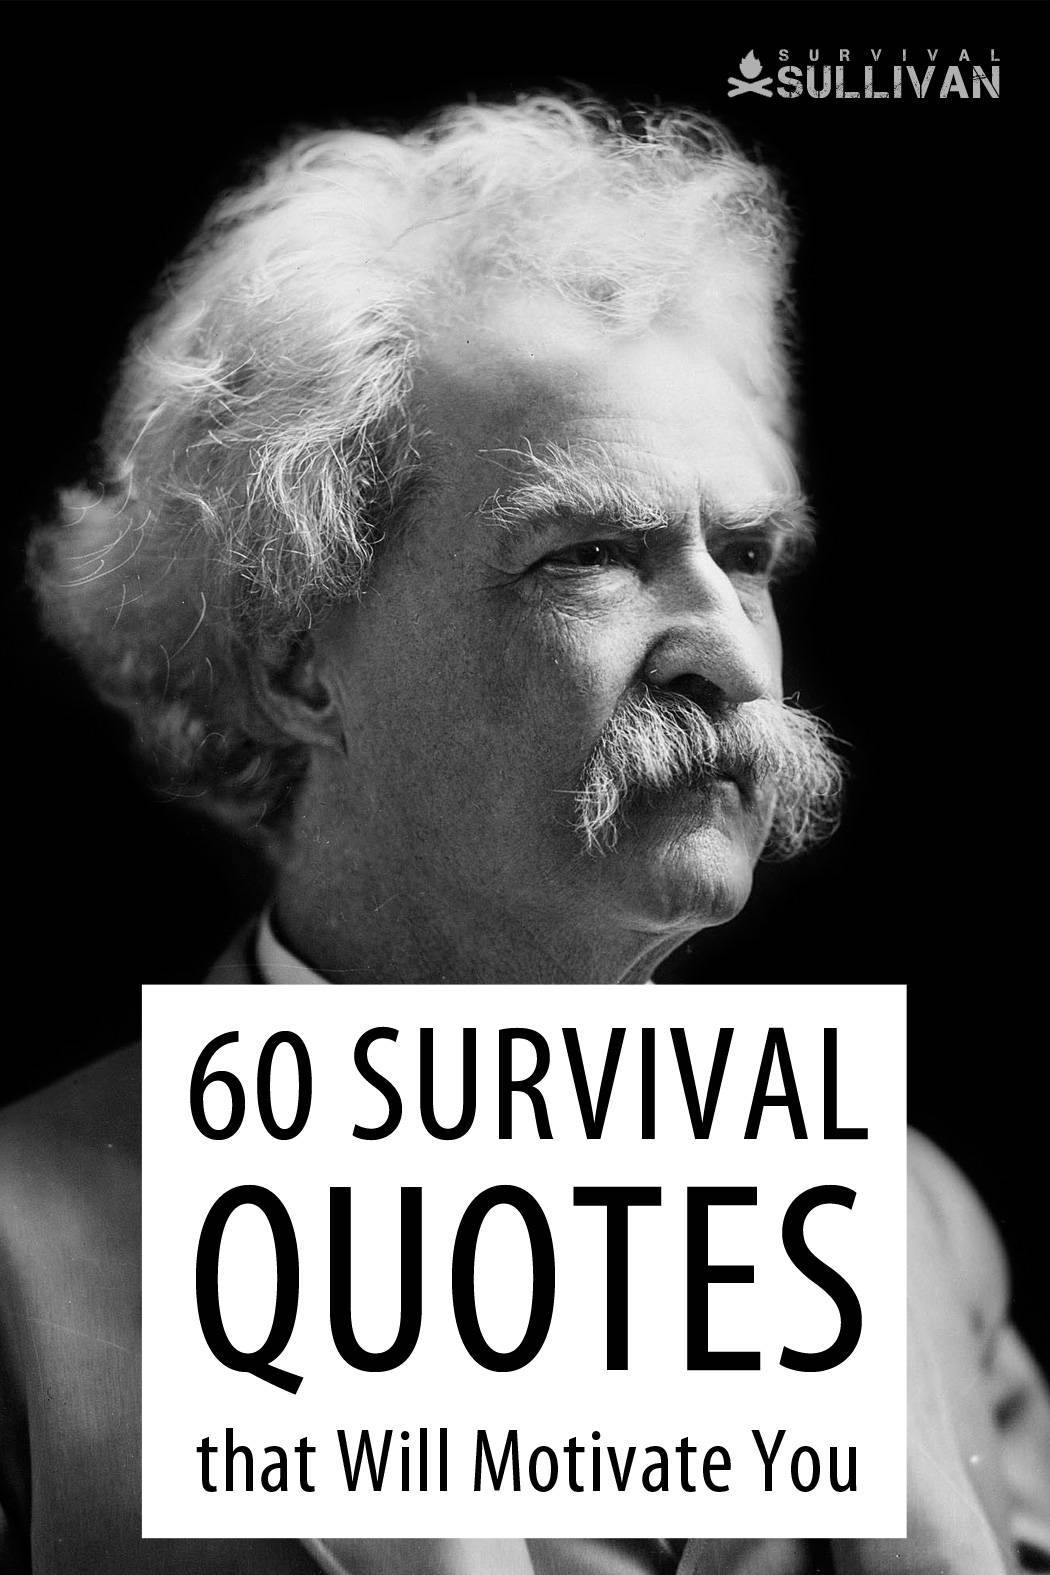 survival quotes Pinterest image